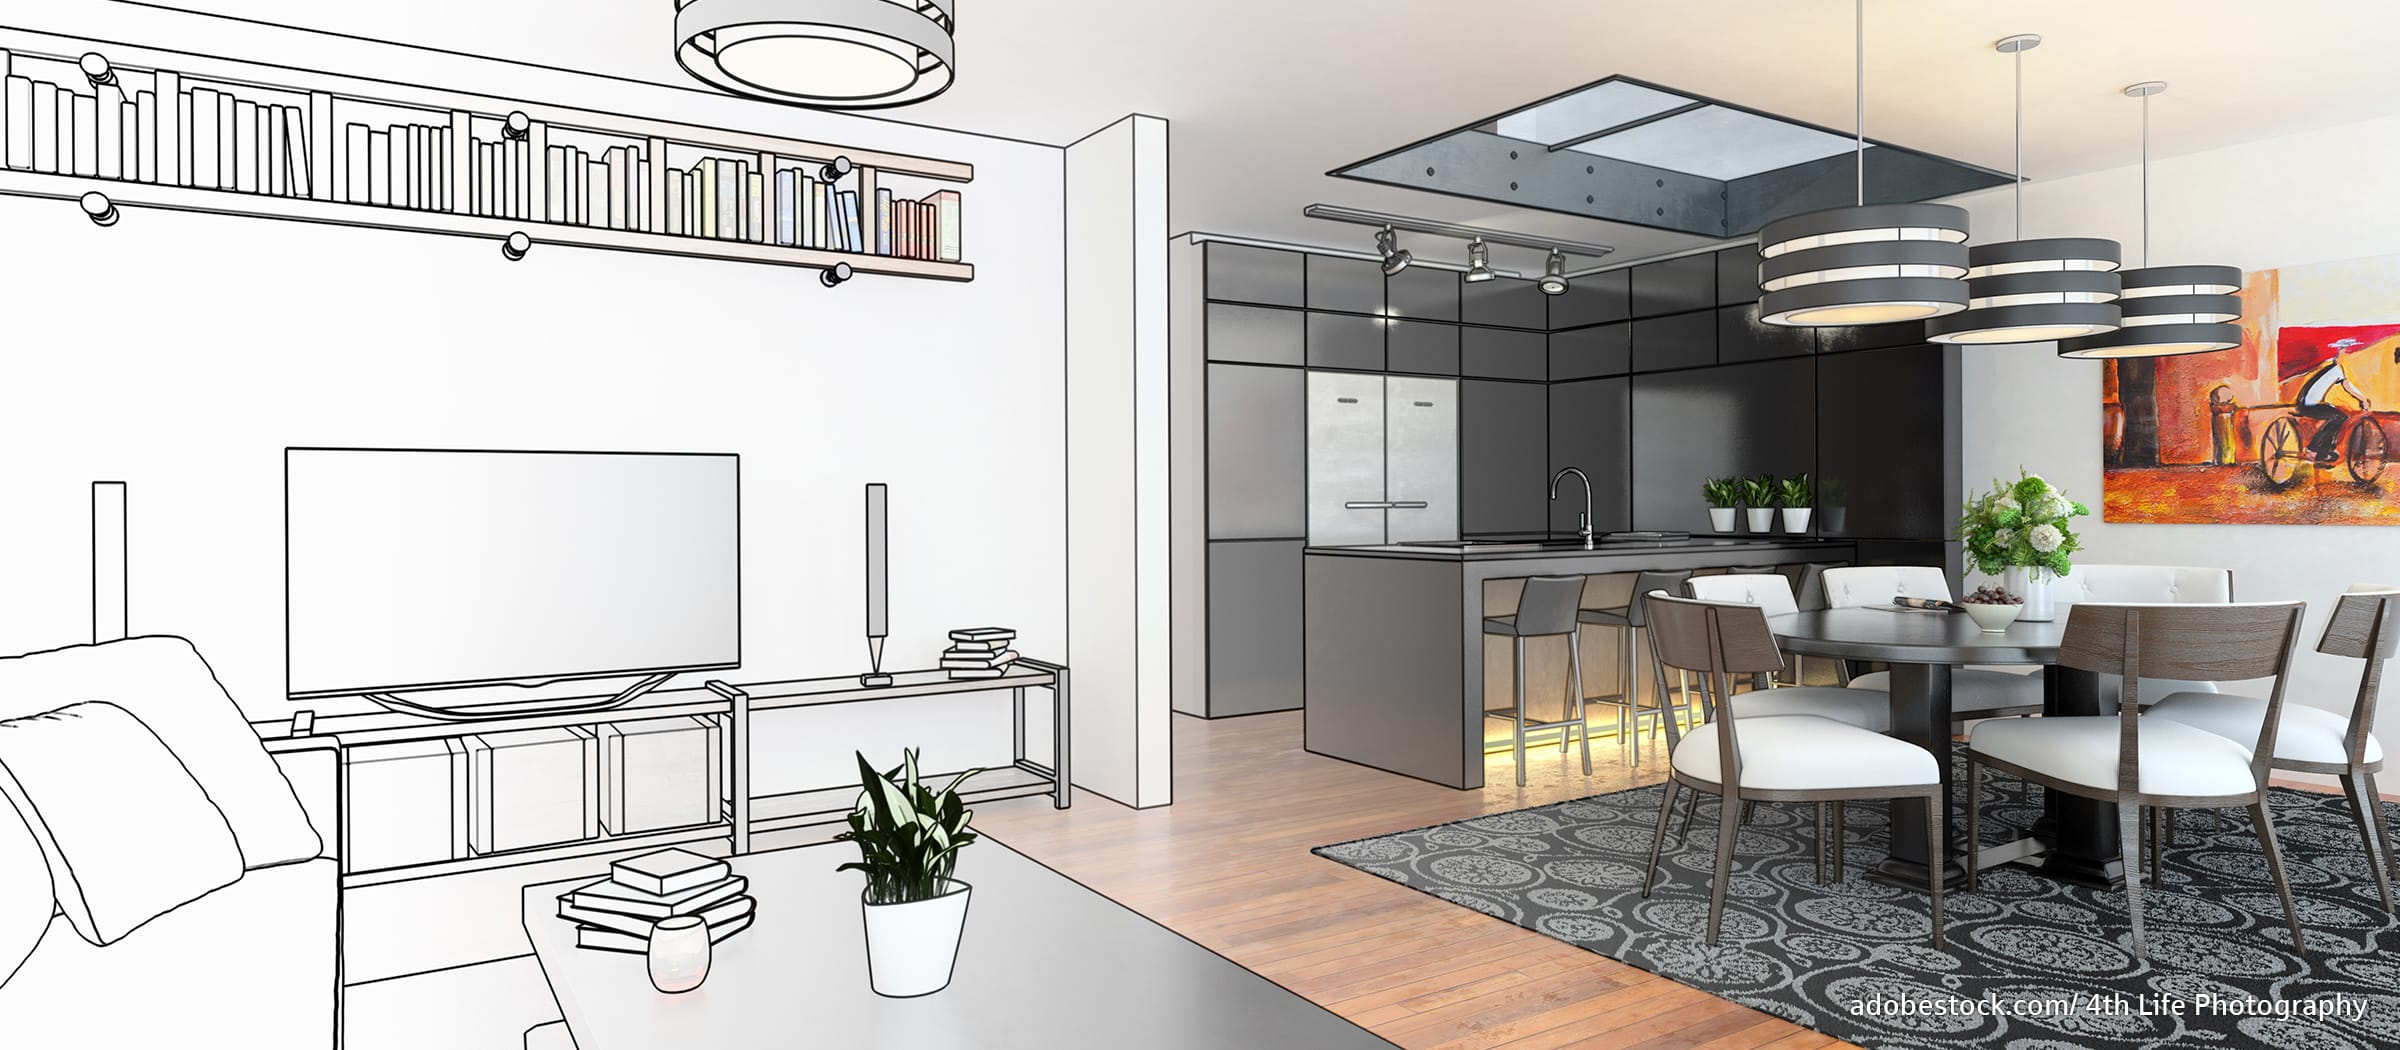 Hausbau: Visualisierung Wohn- und Küchenbereich